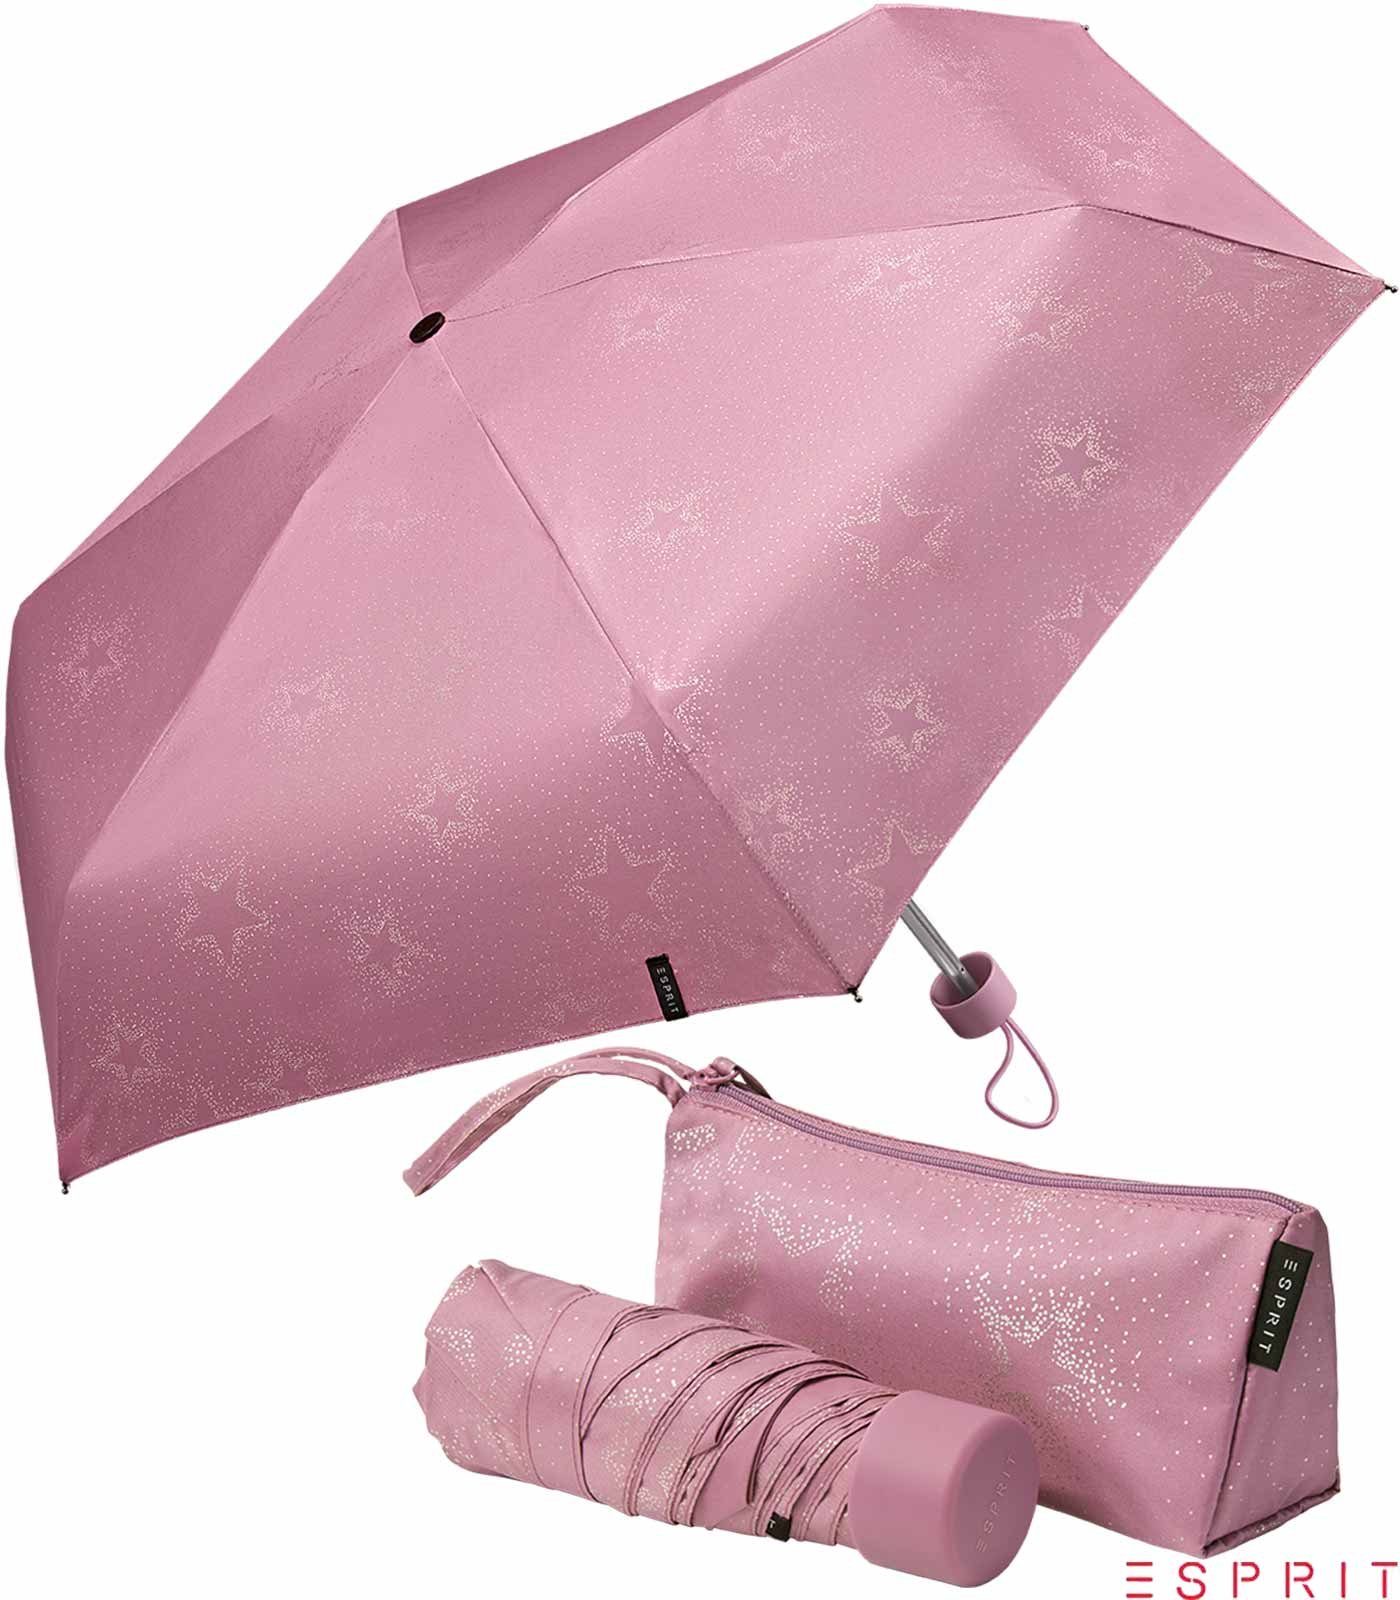 Taschenregenschirm in Tasche Pouch Starburst - berry - Esprit metallic, einer klein, dusky Mini Ultra praktischen winzig Tragetasche mit orchid